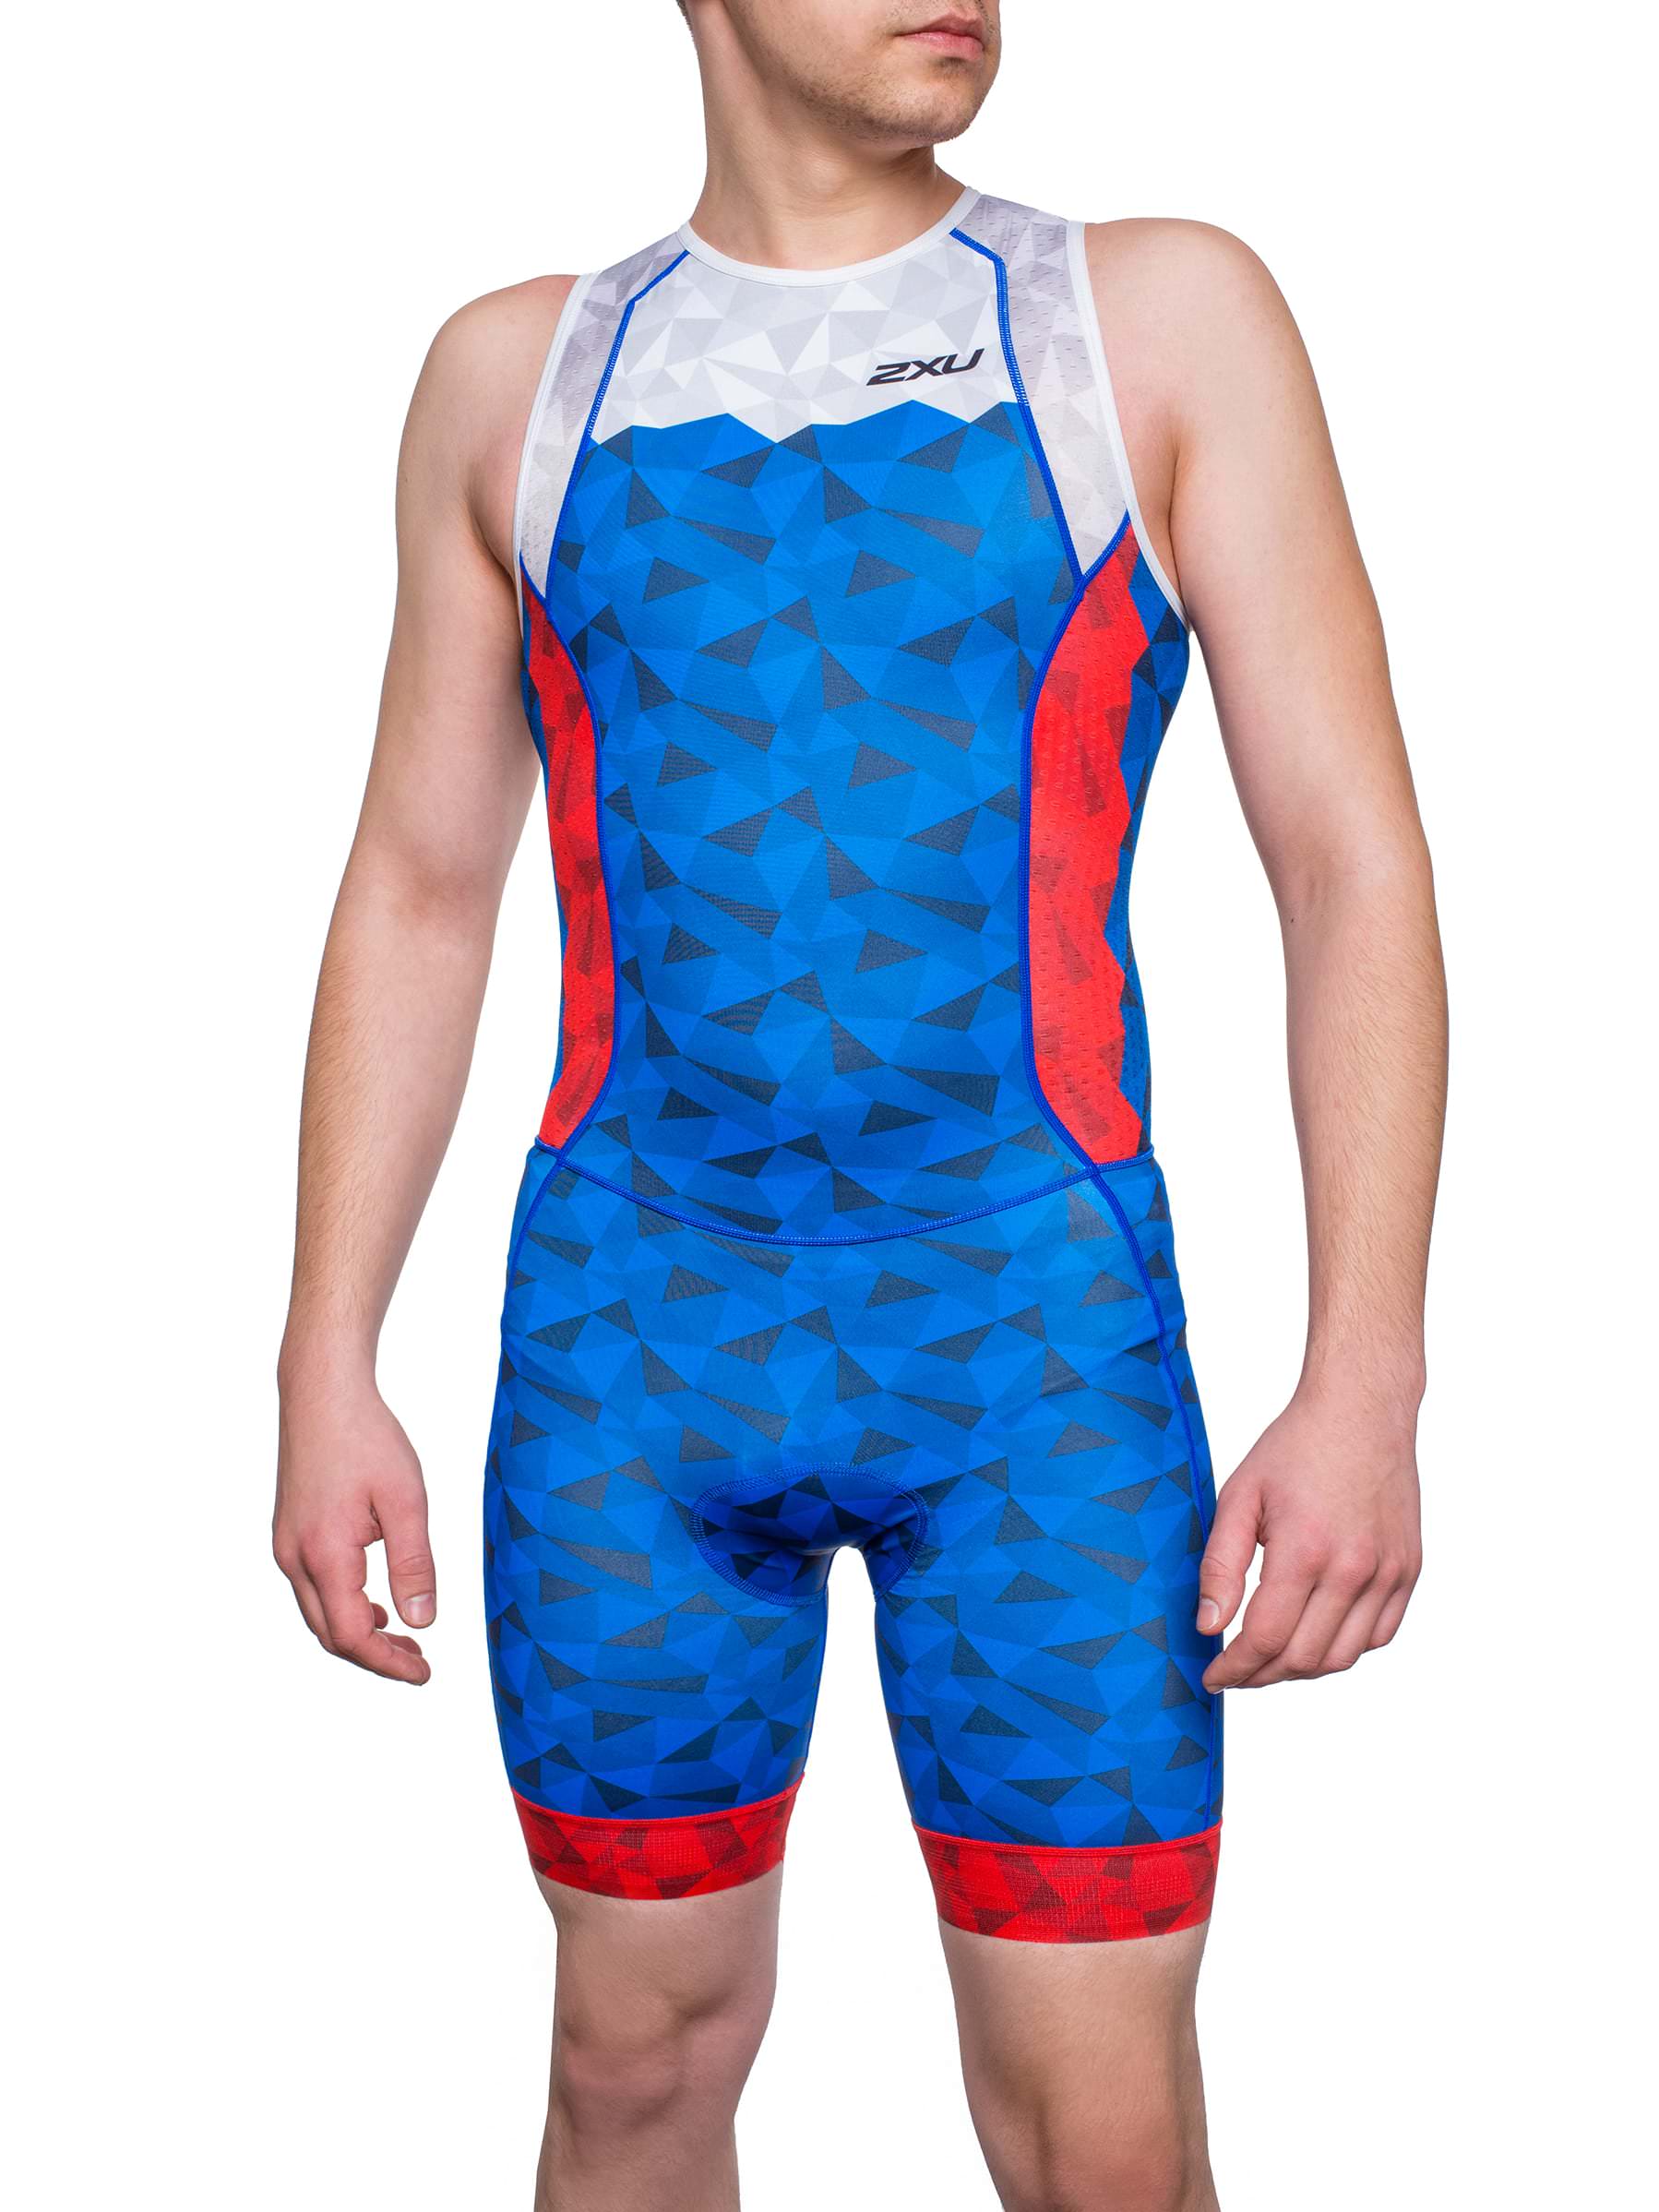 Мужской стартовый костюм 2XU для триатлона без рукавов серия AERO (индивидуальный дизайн)